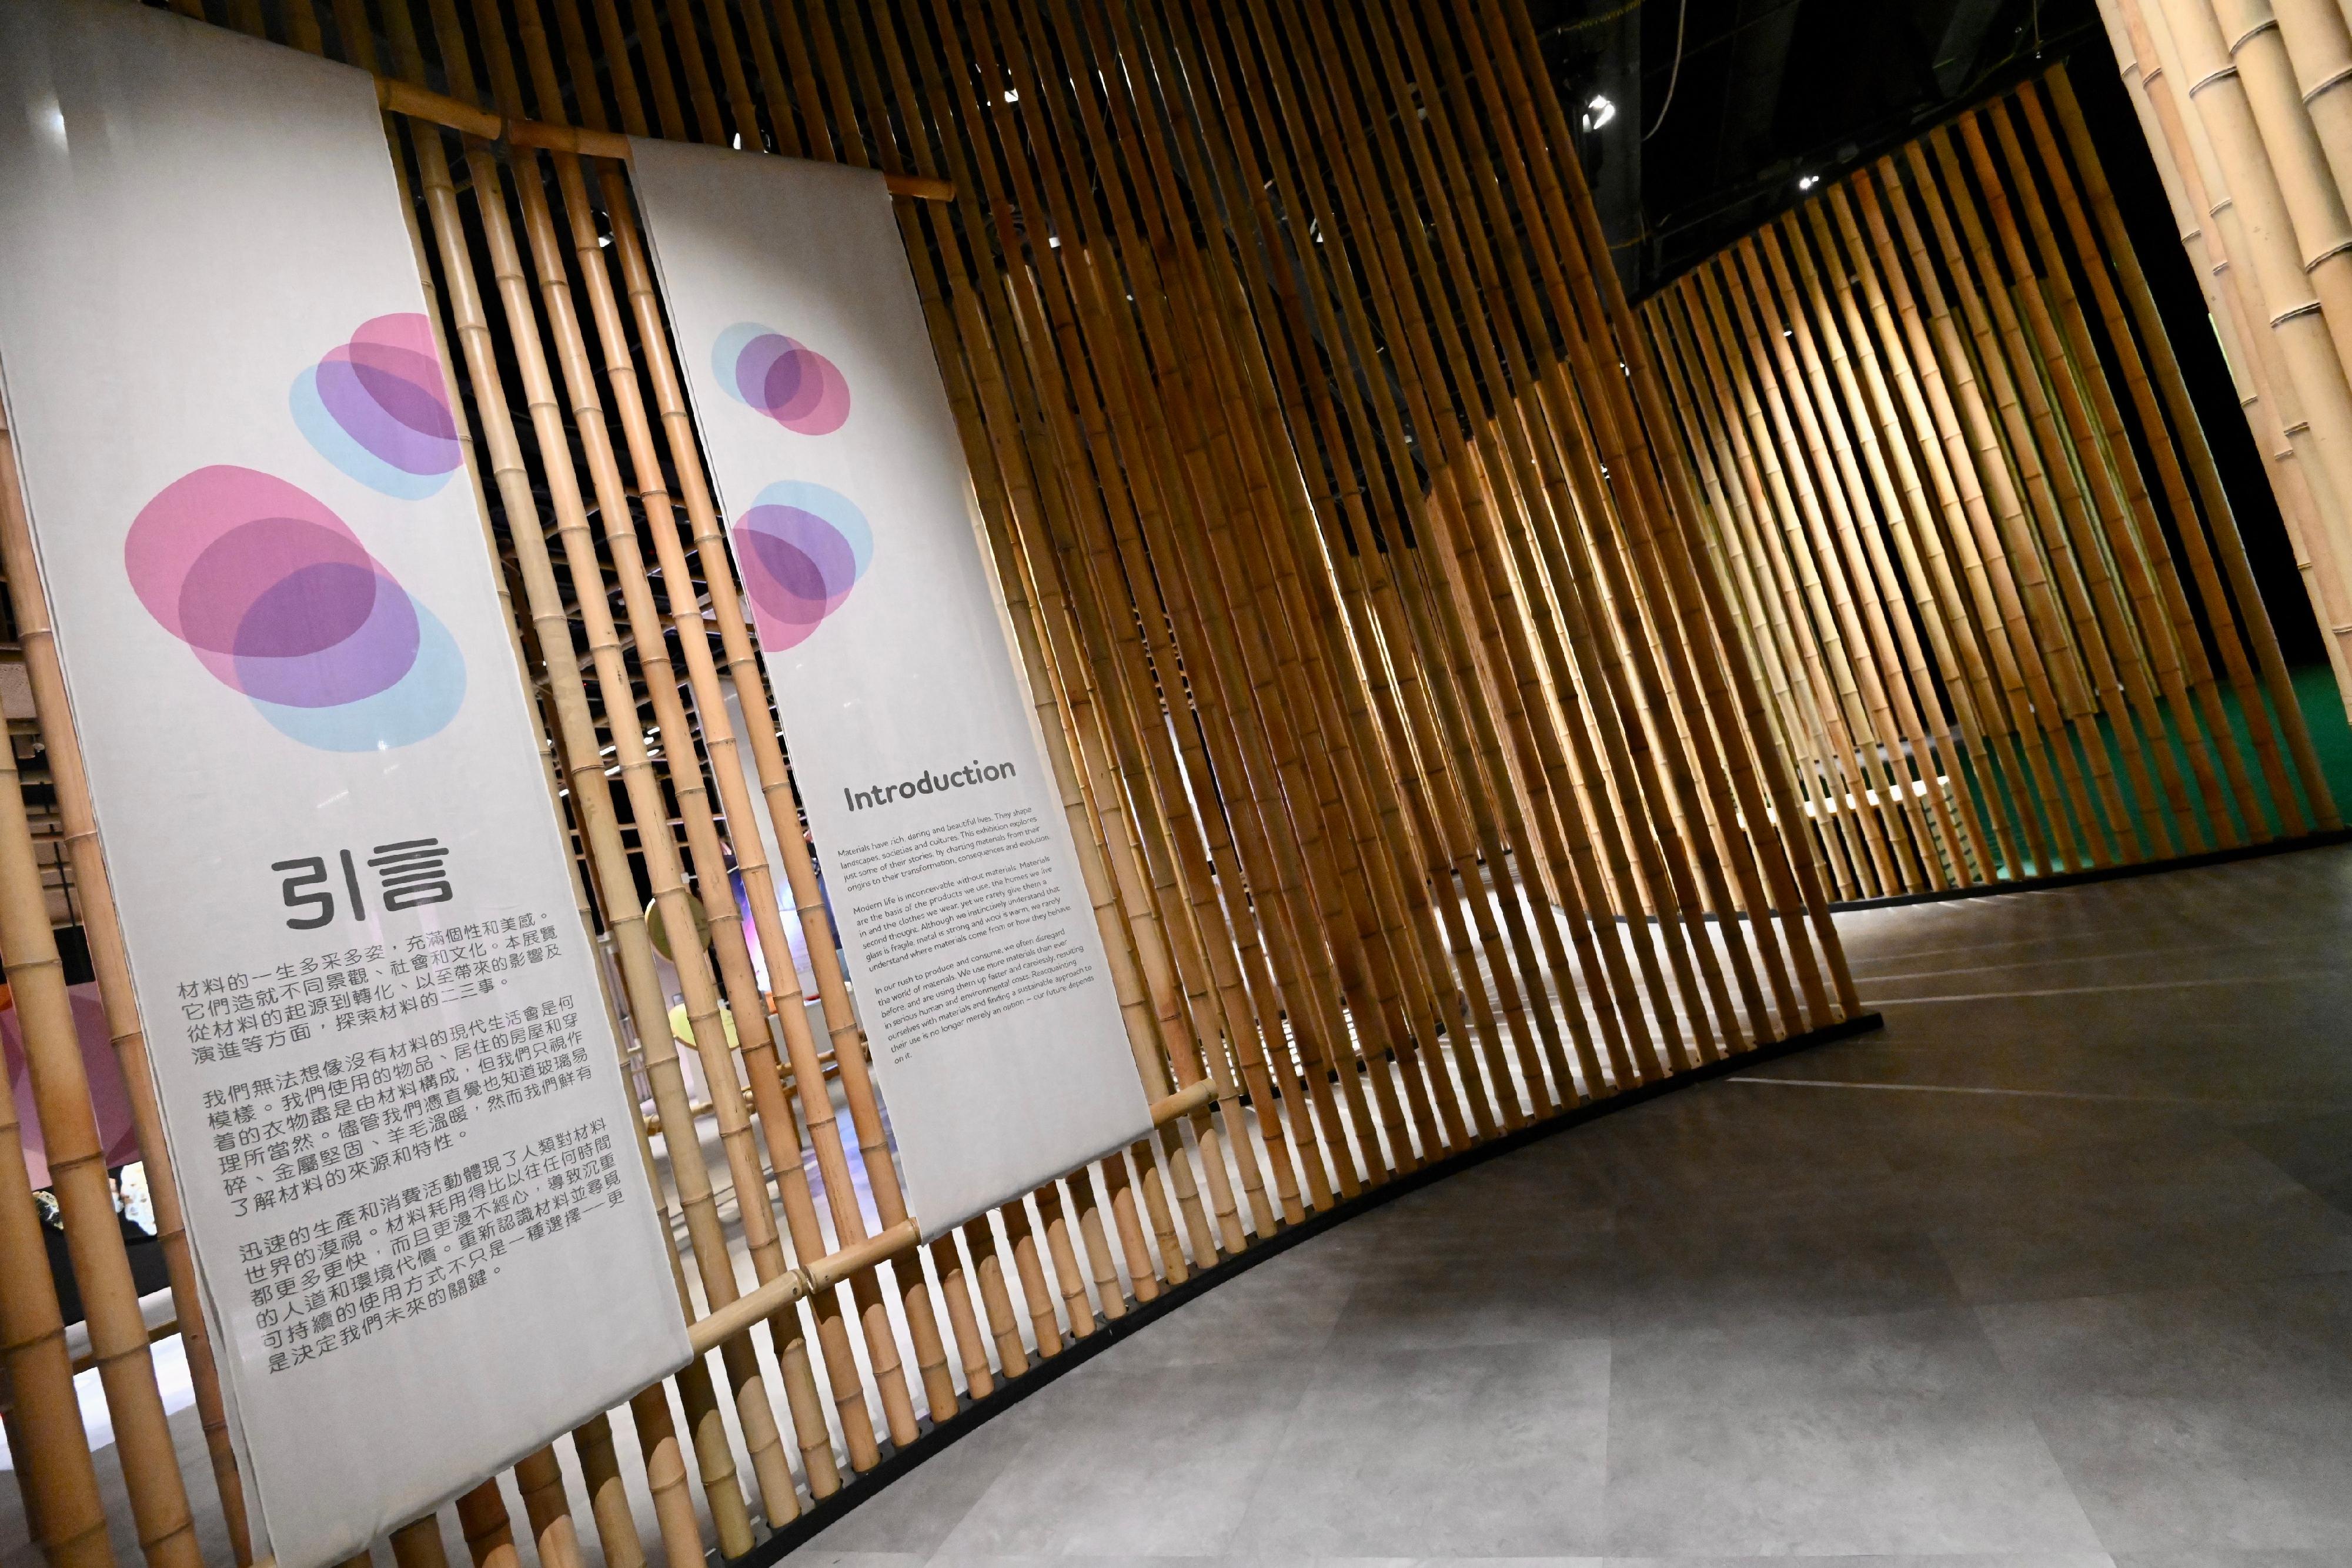 香港科學館明日（五月十九日）起舉辦「天生我『材』─材料科學與設計」展覽。展覽以「竹」作為設計理念。